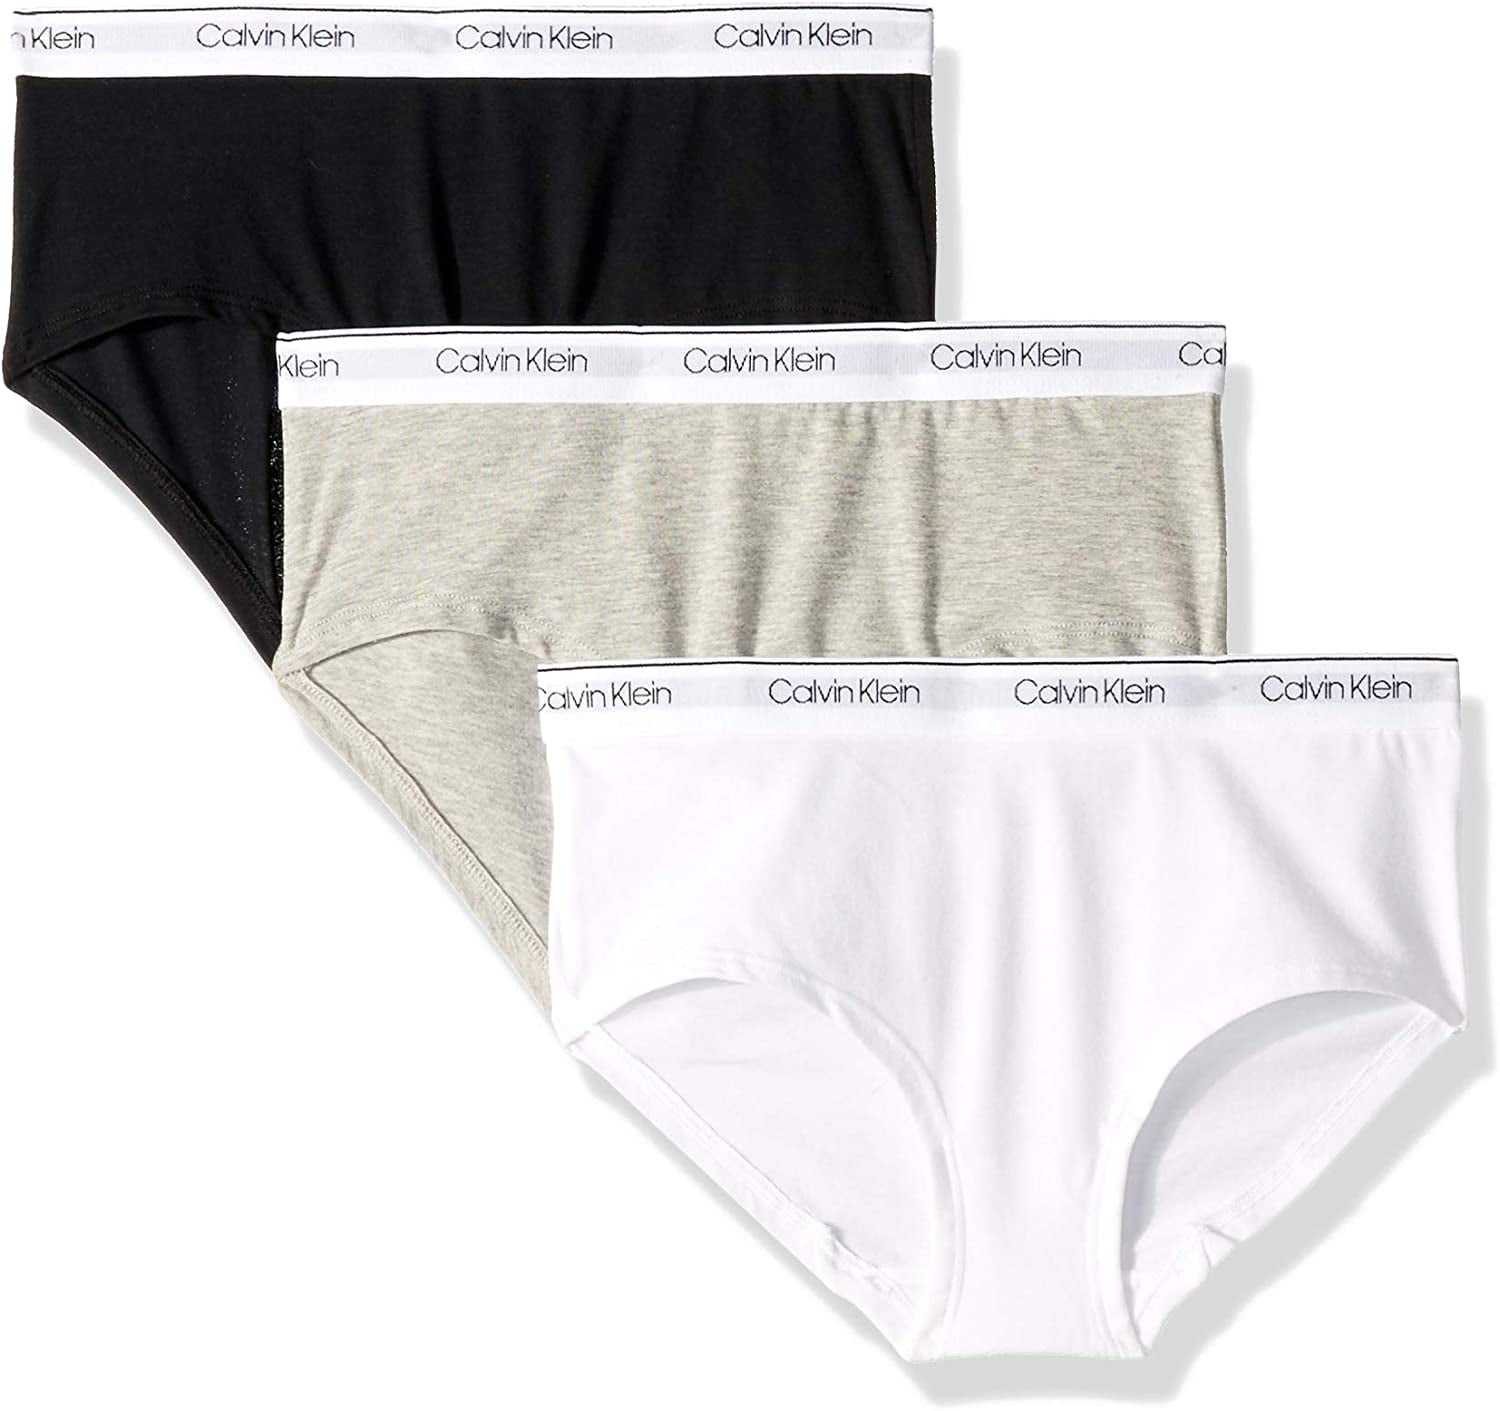 Calvin Klein Women 3 Pack Hipster Underwear (Light Pink/Gray/Black, Size  Medium)